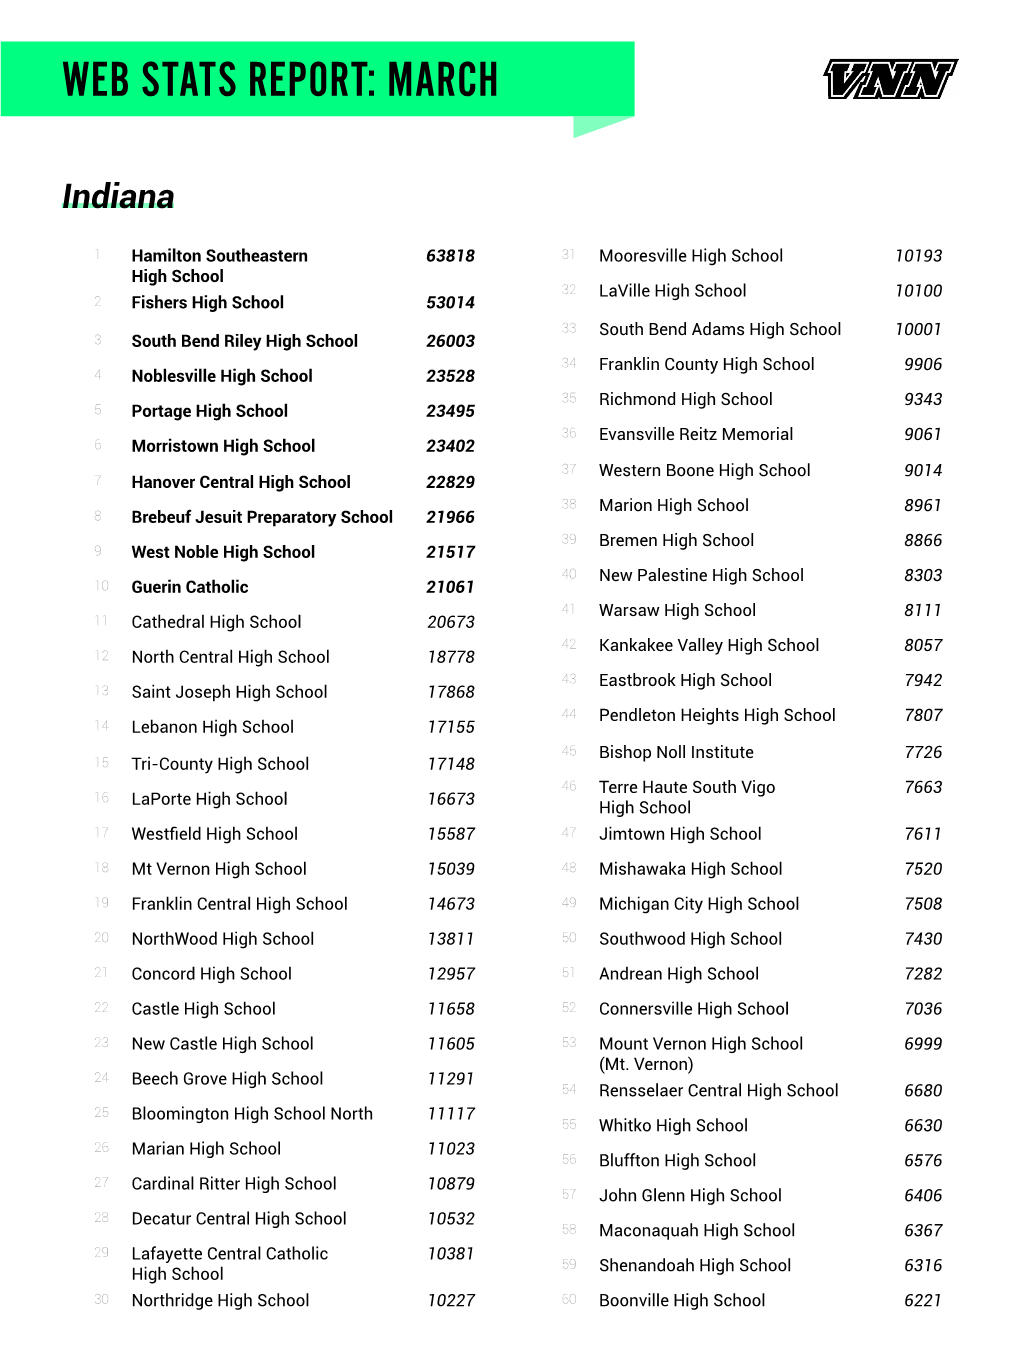 VNN Indiana Webstats Rankings